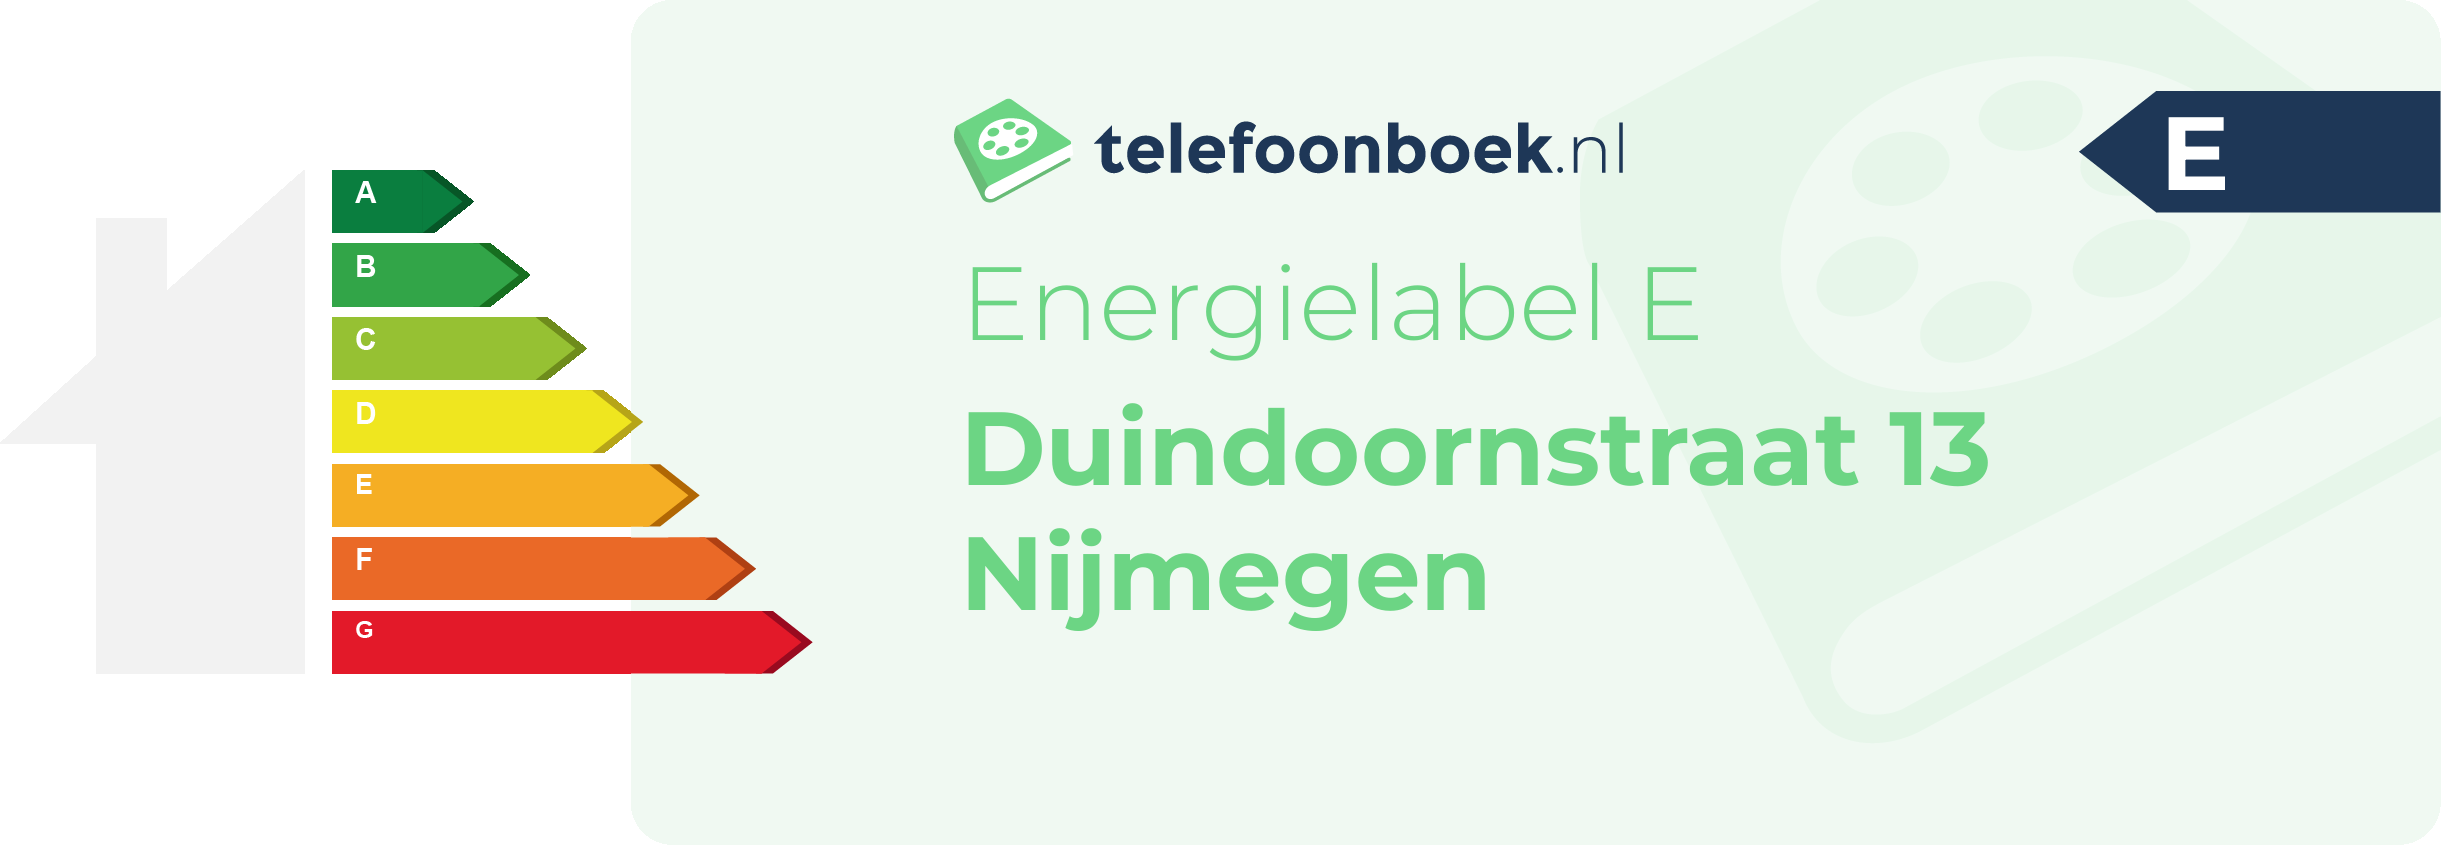 Energielabel Duindoornstraat 13 Nijmegen